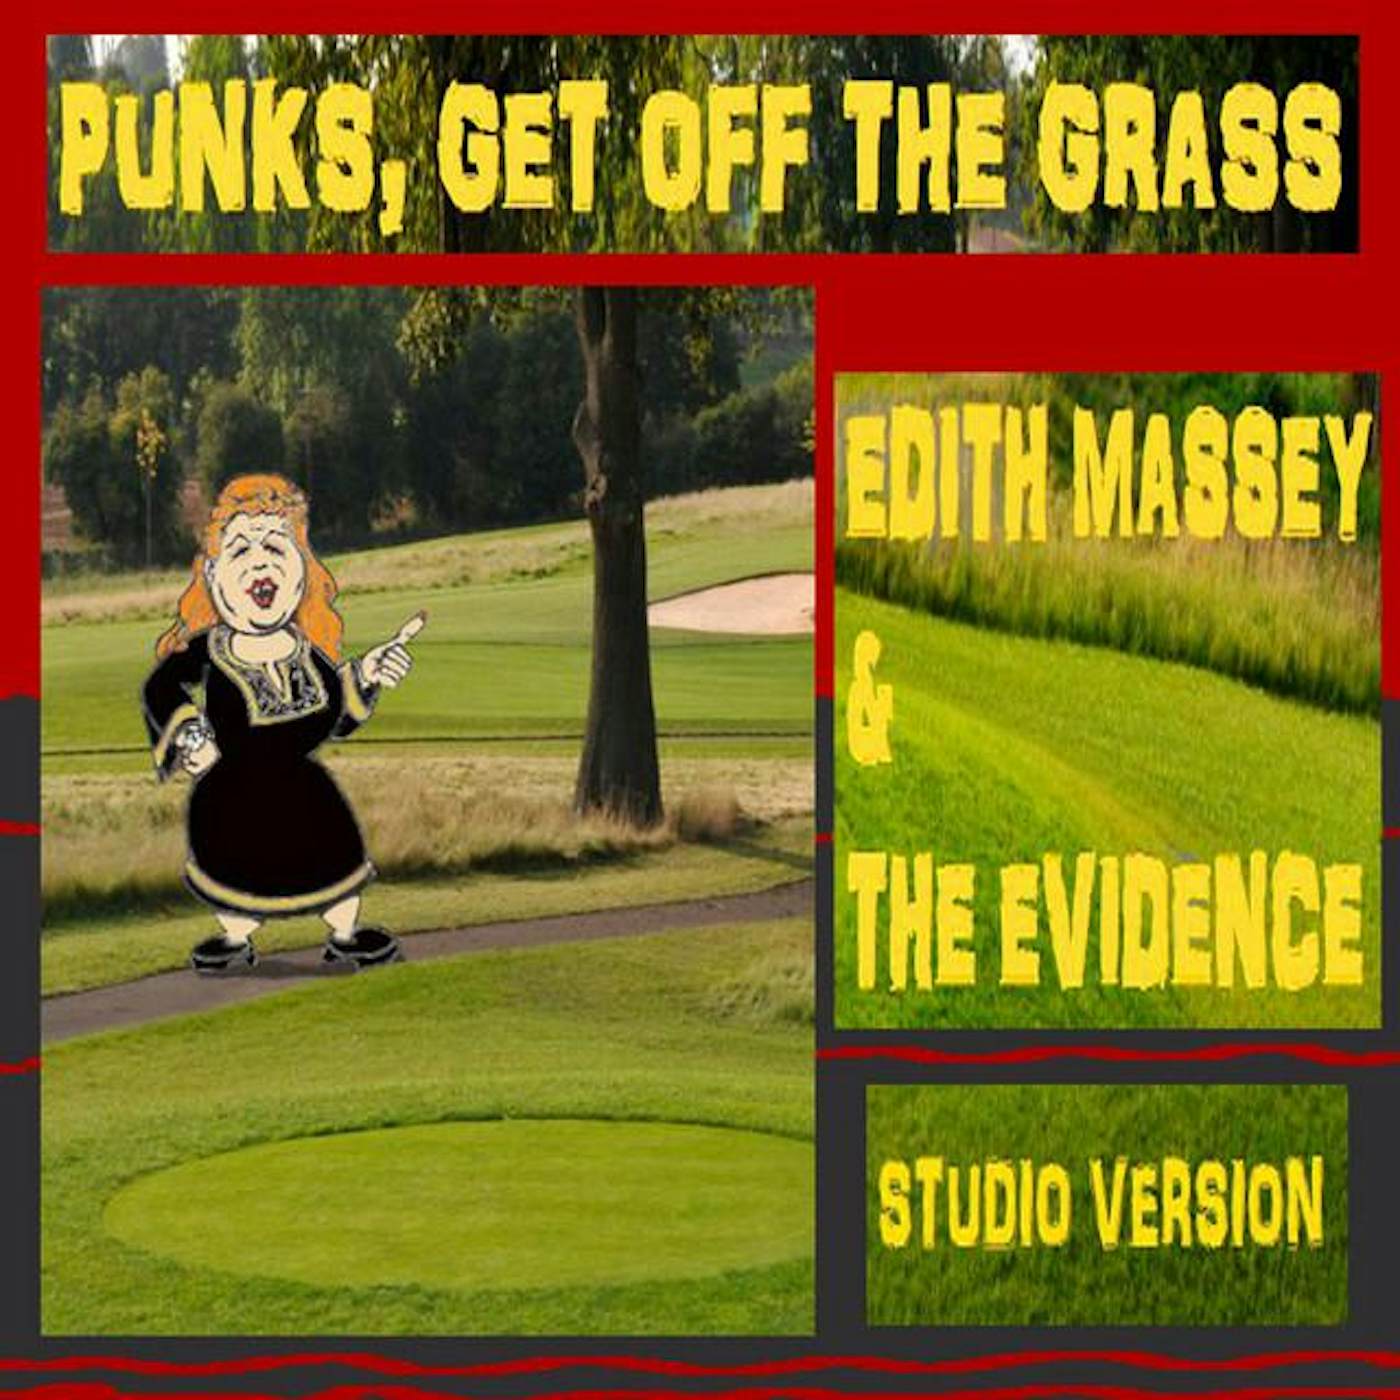 The Edith Massey